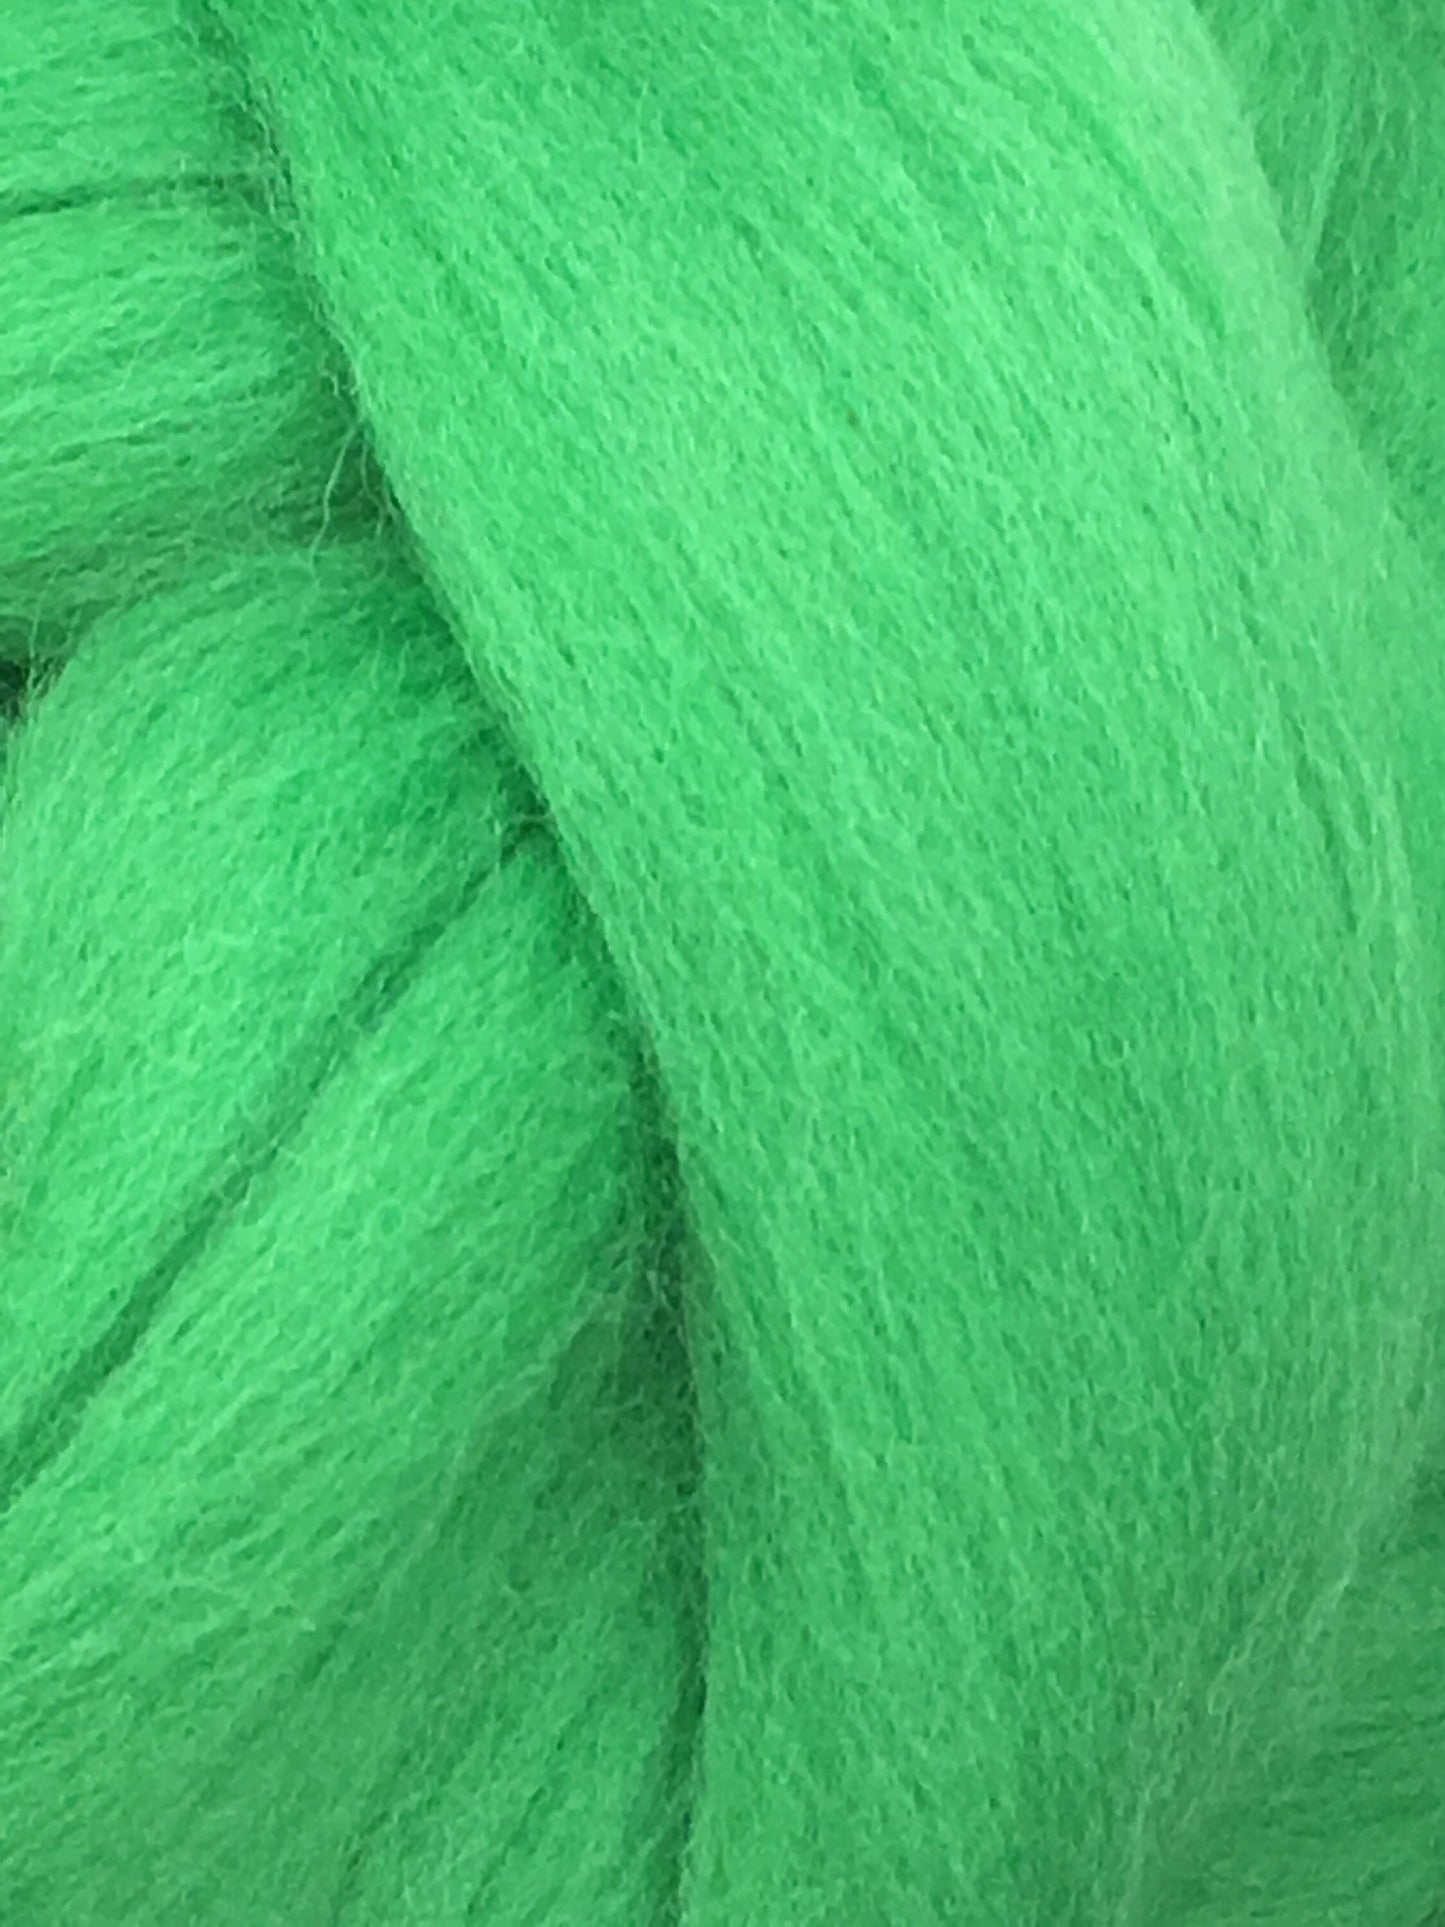 Shamrock Green Wool Roving